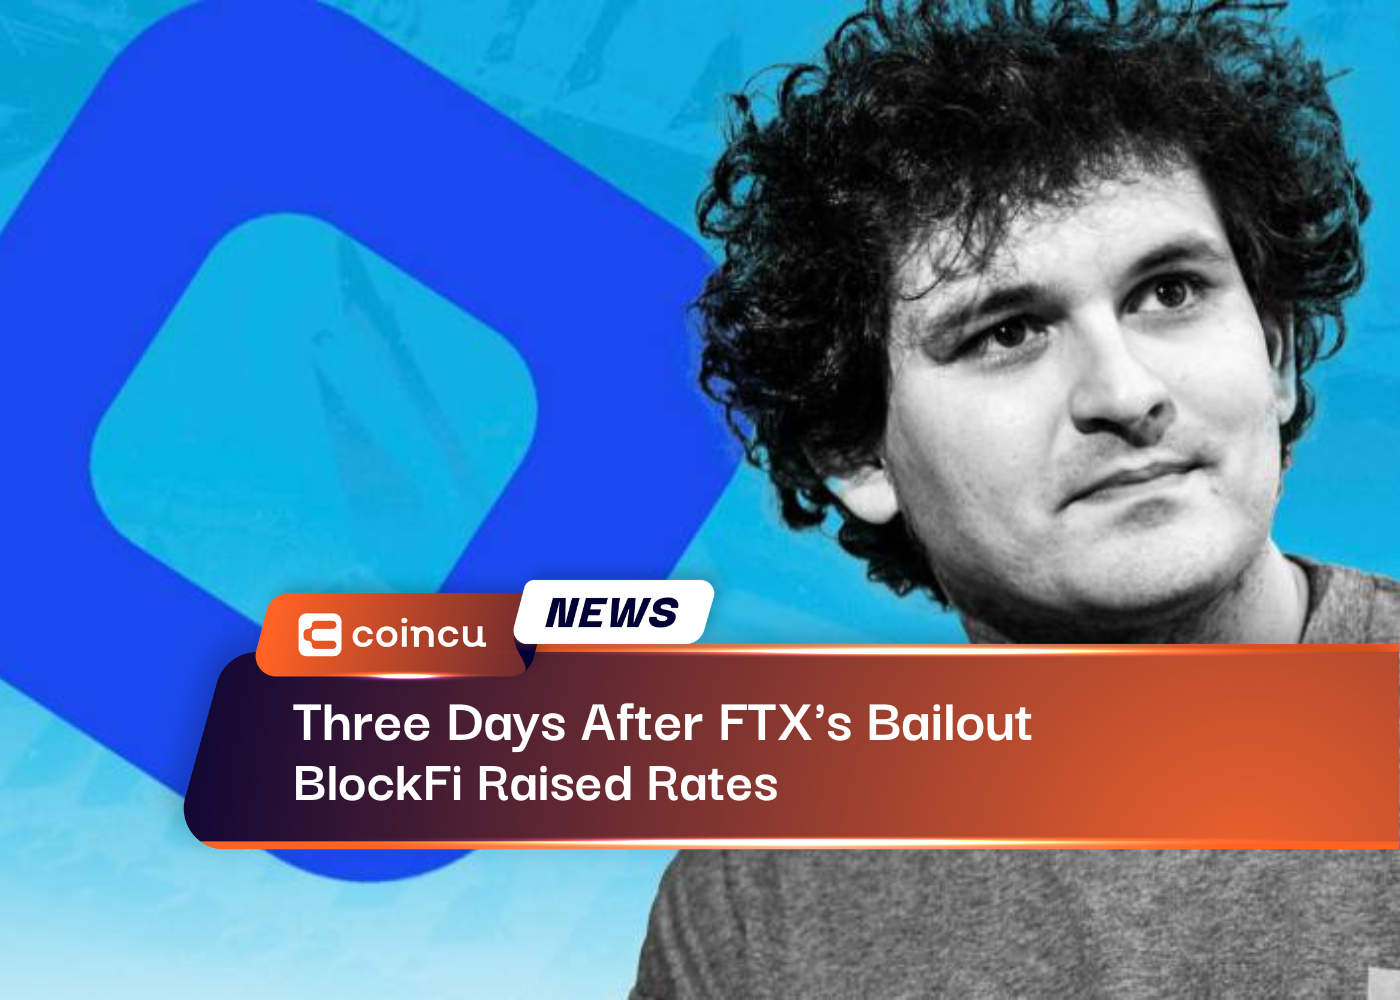 BlockFi Raised Rates